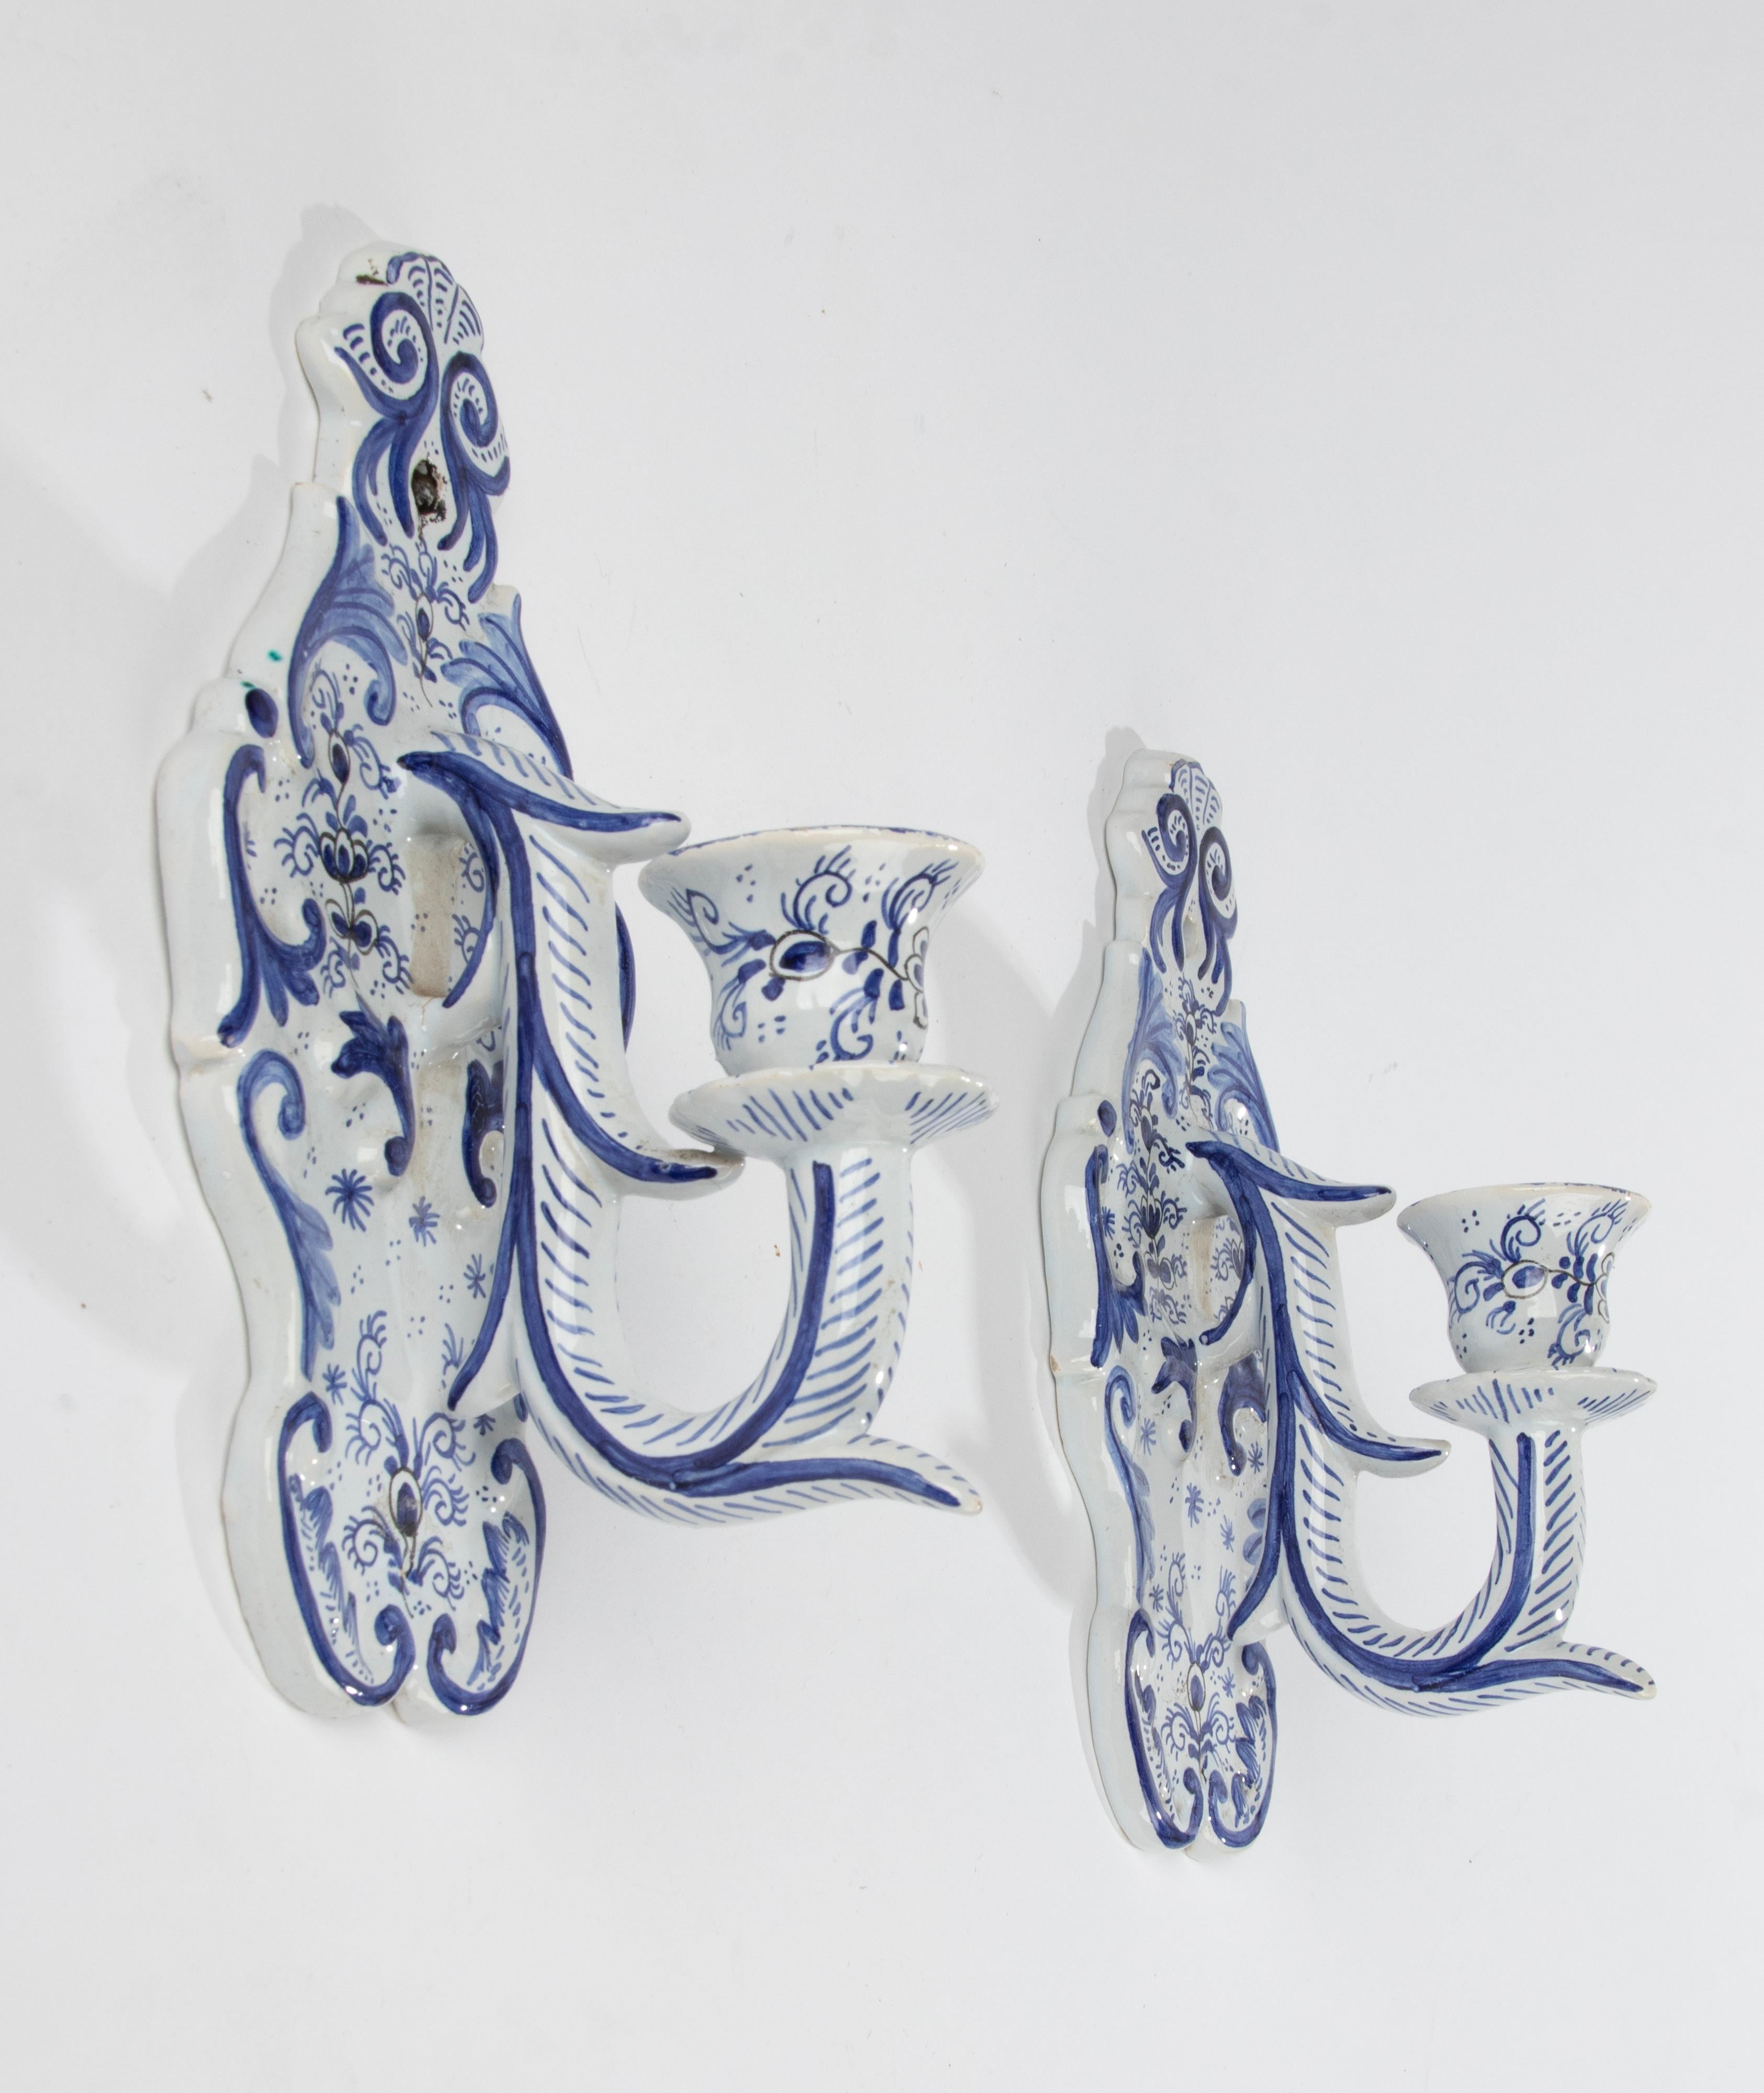 Ein Paar dekorative Delfter Kerzenhalter aus Steingut, handbemalt mit einem blau-weißen Muster.
Die Kerzenständer können auch elektrisch hergestellt werden und haben kleine Löcher, durch die der Draht geführt wird. Aber auch als Wandhalter für